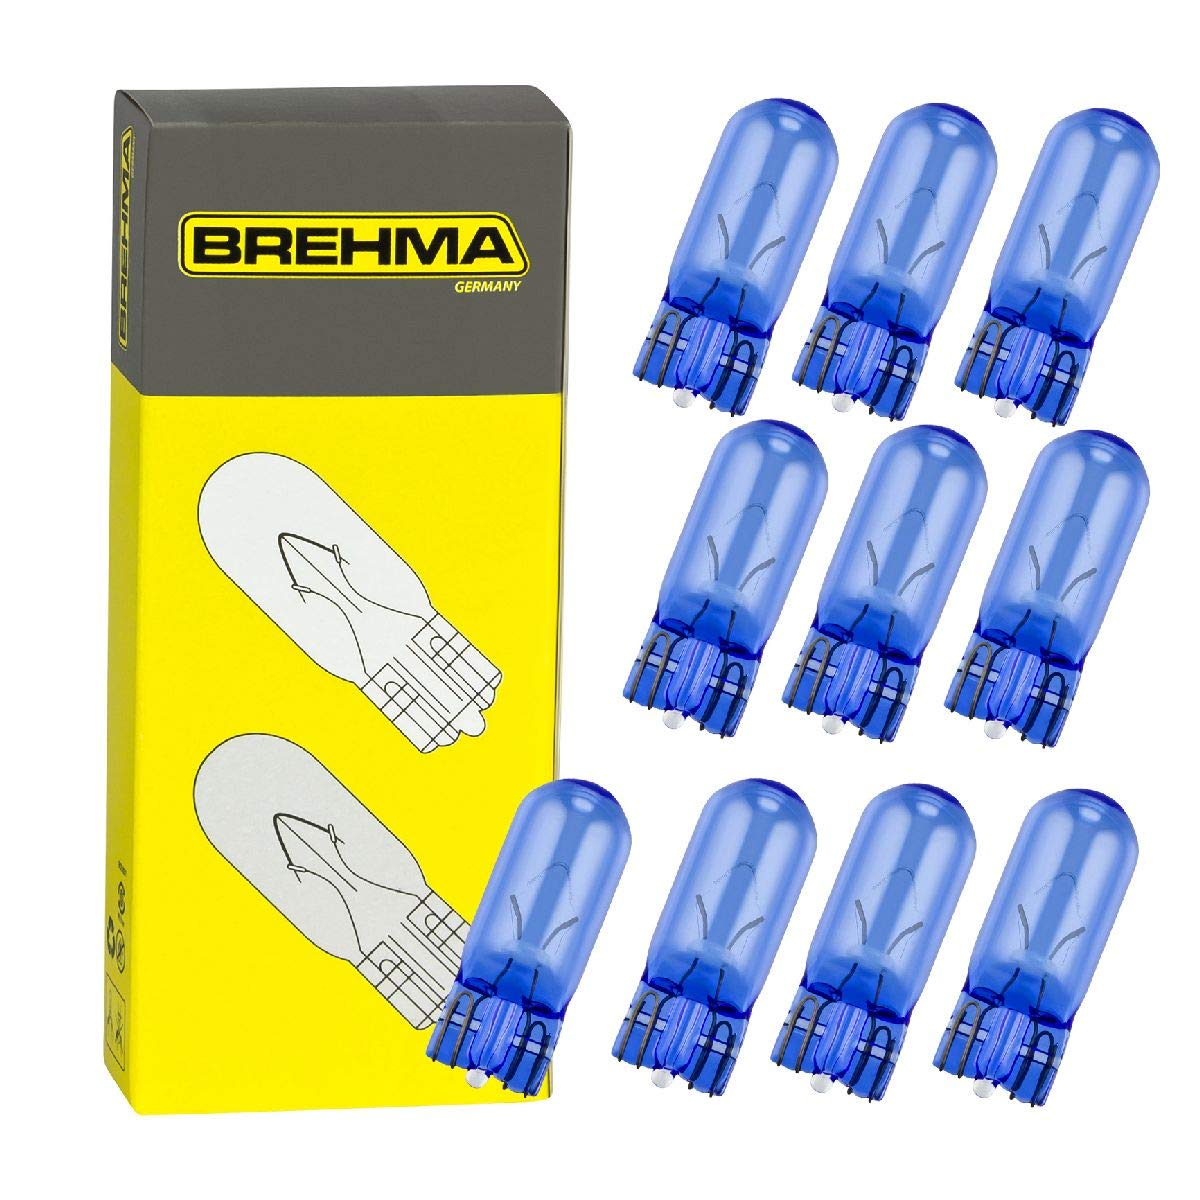 10x BREHMA Standlicht W5W Autolampen in Xenon Optik 12V 5W von BREHMA